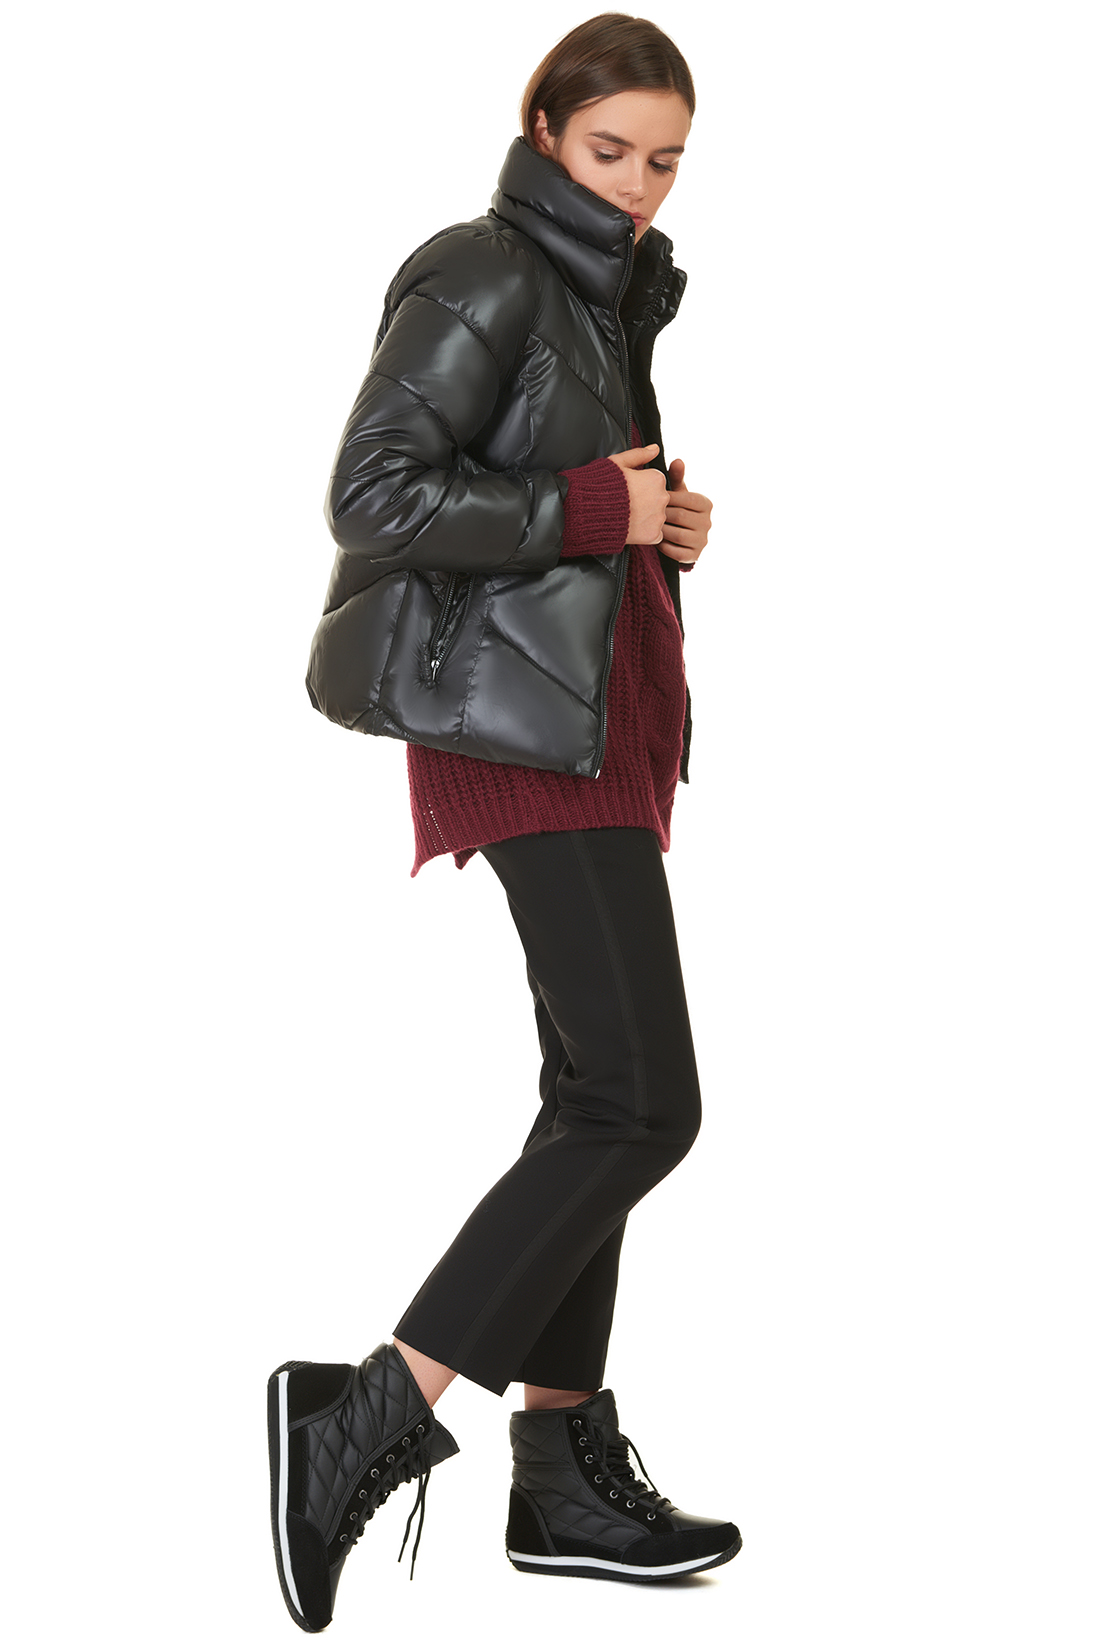 Укороченная дутая куртка (арт. baon B037565), размер S, цвет черный Укороченная дутая куртка (арт. baon B037565) - фото 5